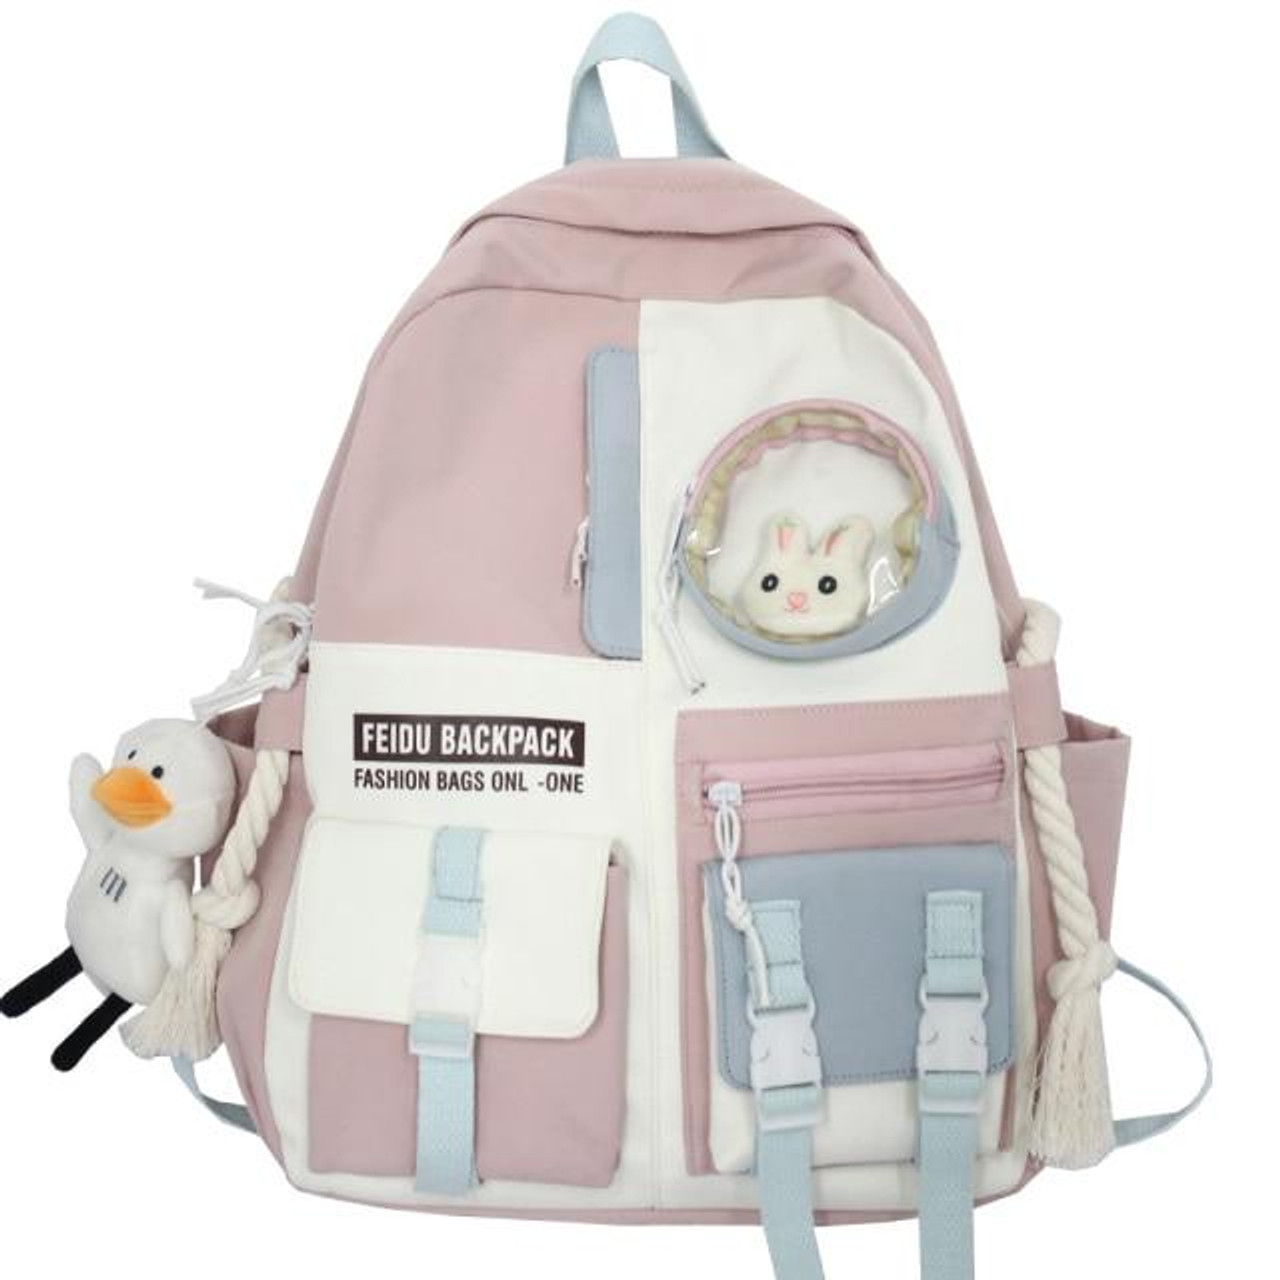 My School Bestie Pastel Bunny Backpack